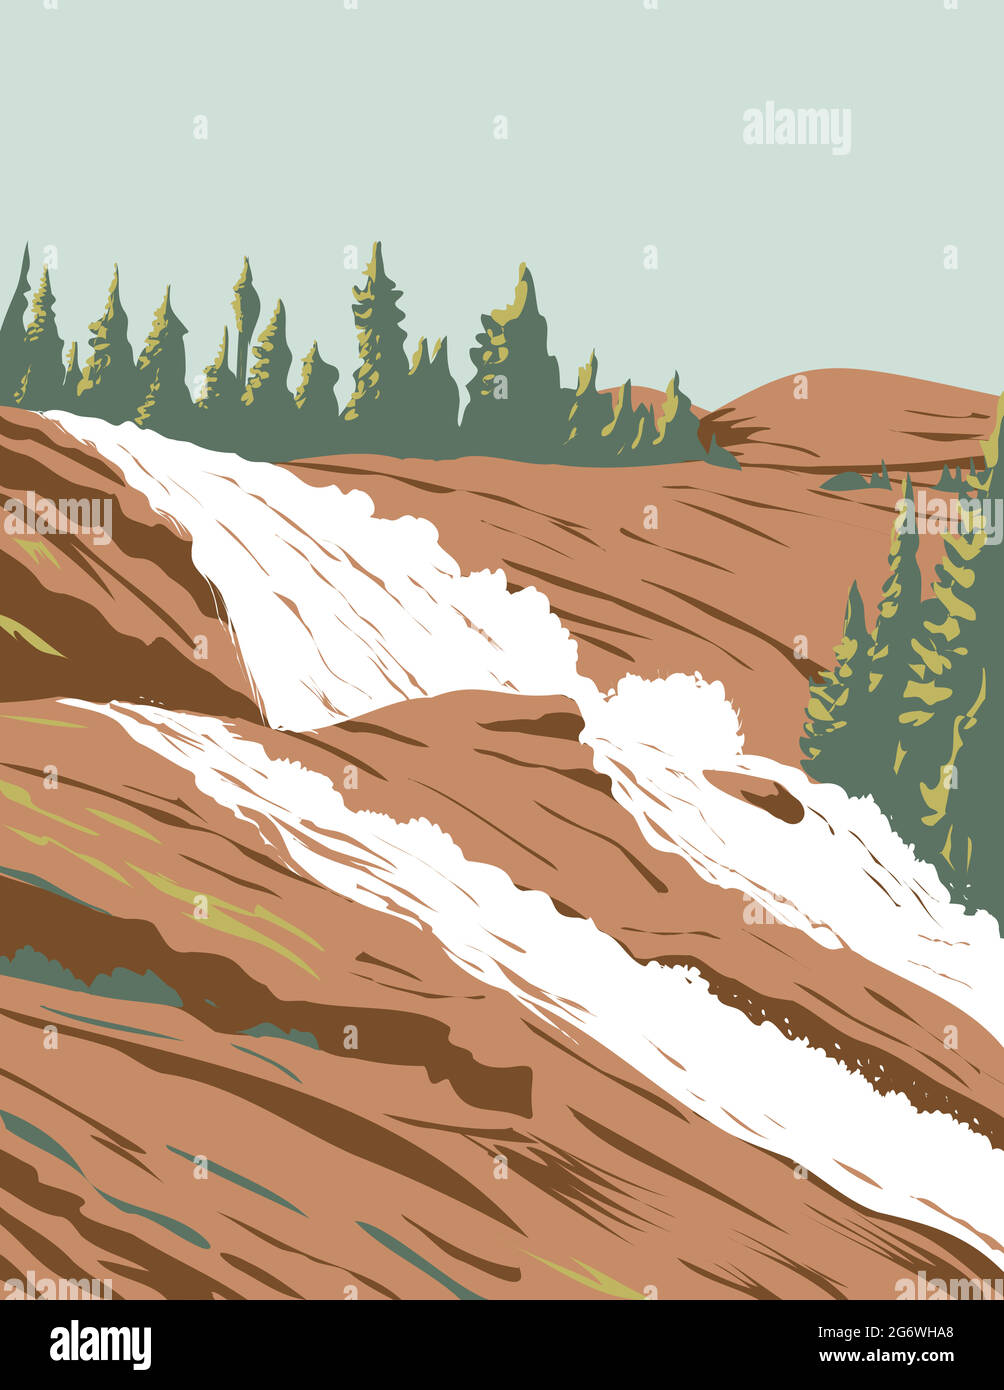 WPA-Plakatkunst von Waterwheel Falls am Tuolumne River in Sierra Nevada im Yosemite National Park, Kalifornien, USA in Arbeiten Projekt A durchgeführt Stock Vektor